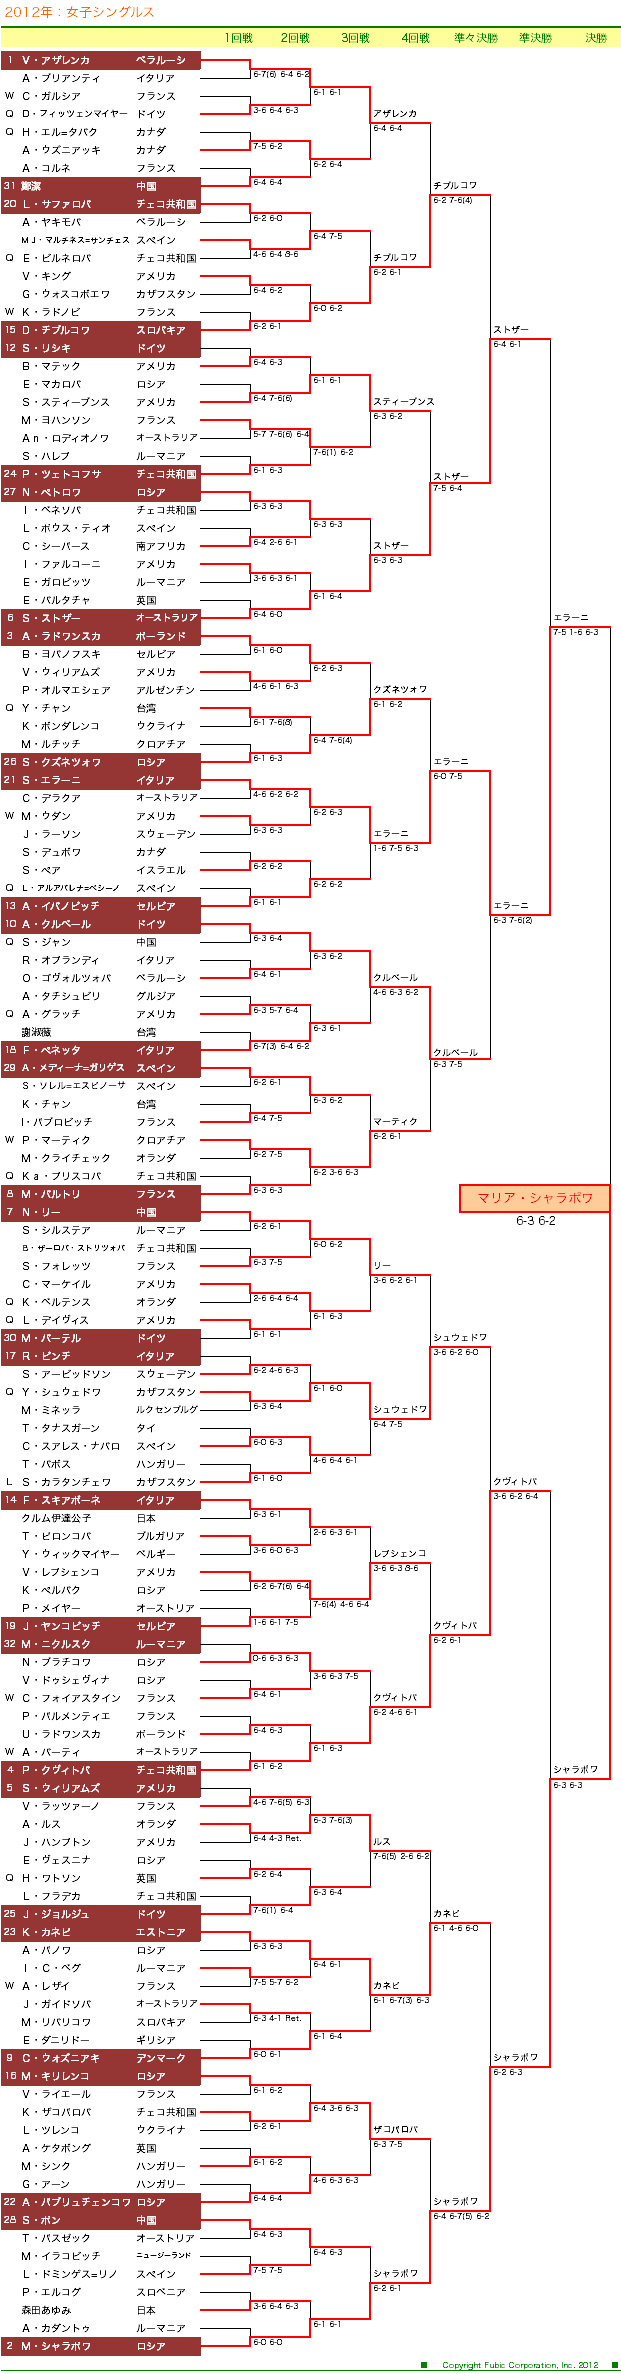 全仏オープンテニス　女子シングルスドロー表